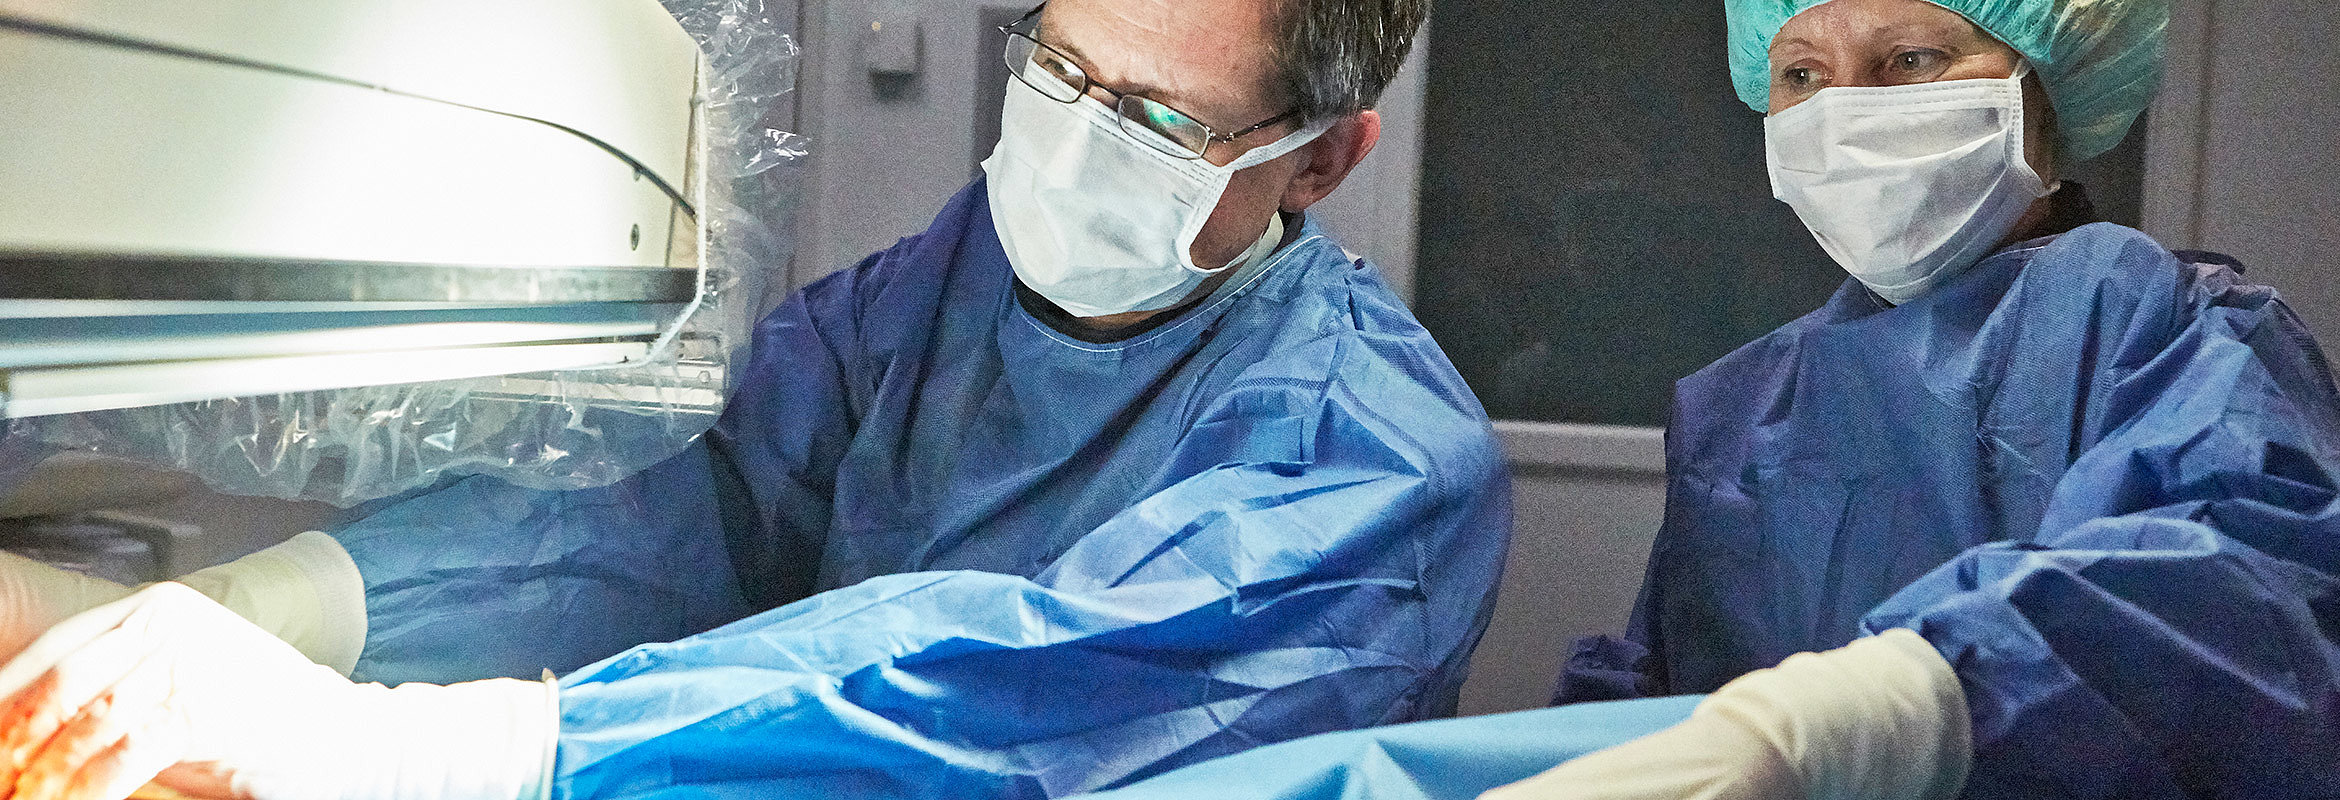 Prof. Dr. med. Jochen Rädle, Chefarzt der Klinik für Innere Medizin 3 in Kaiserslautern, bei einer Untersuchung